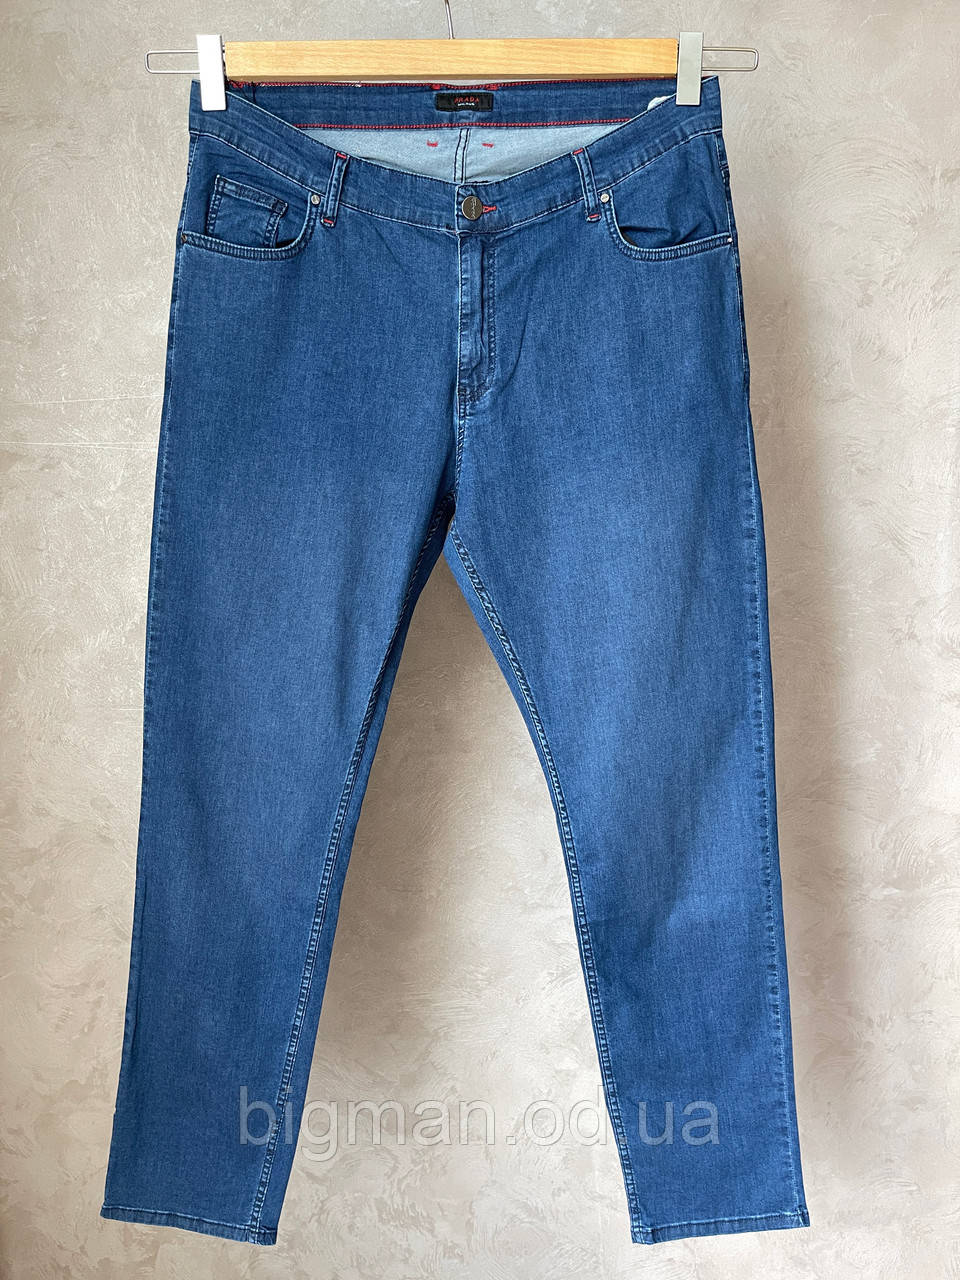 Чоловічі джинси на ремені Grand la Vita 40-50 розміру великого батального розміру Туреччина, фото 1